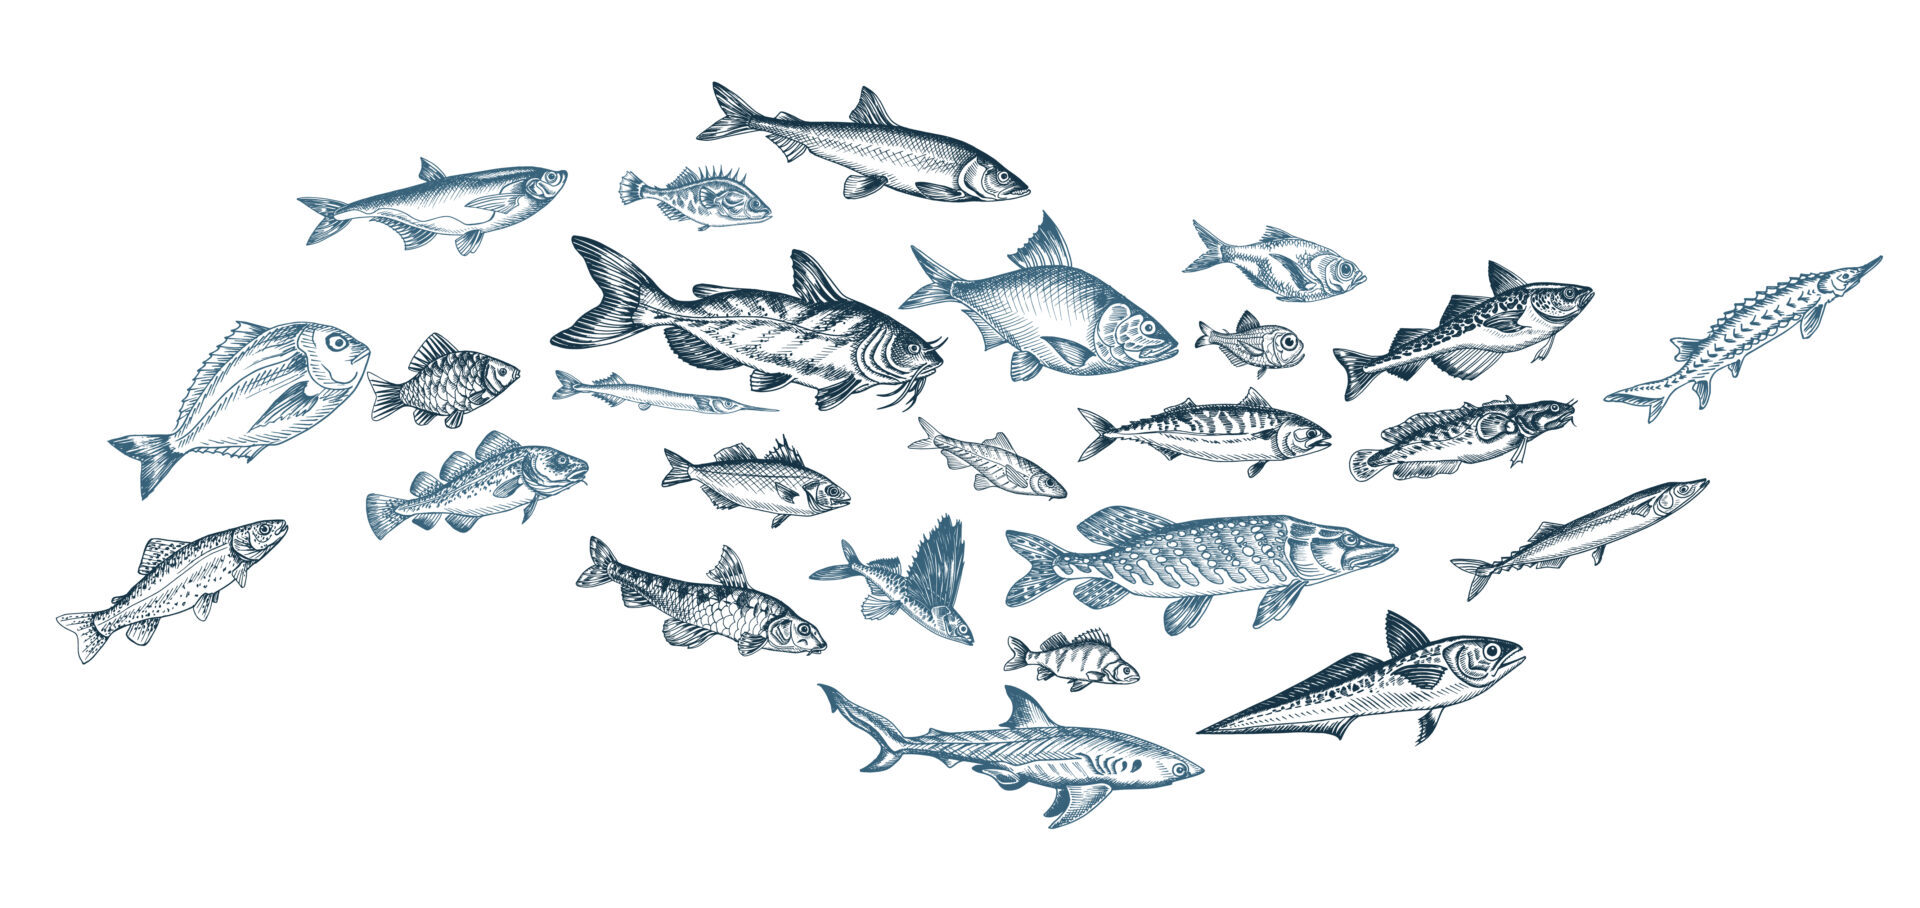 Kuvituskuva, jossa on useita piirrettyjä kaloja.